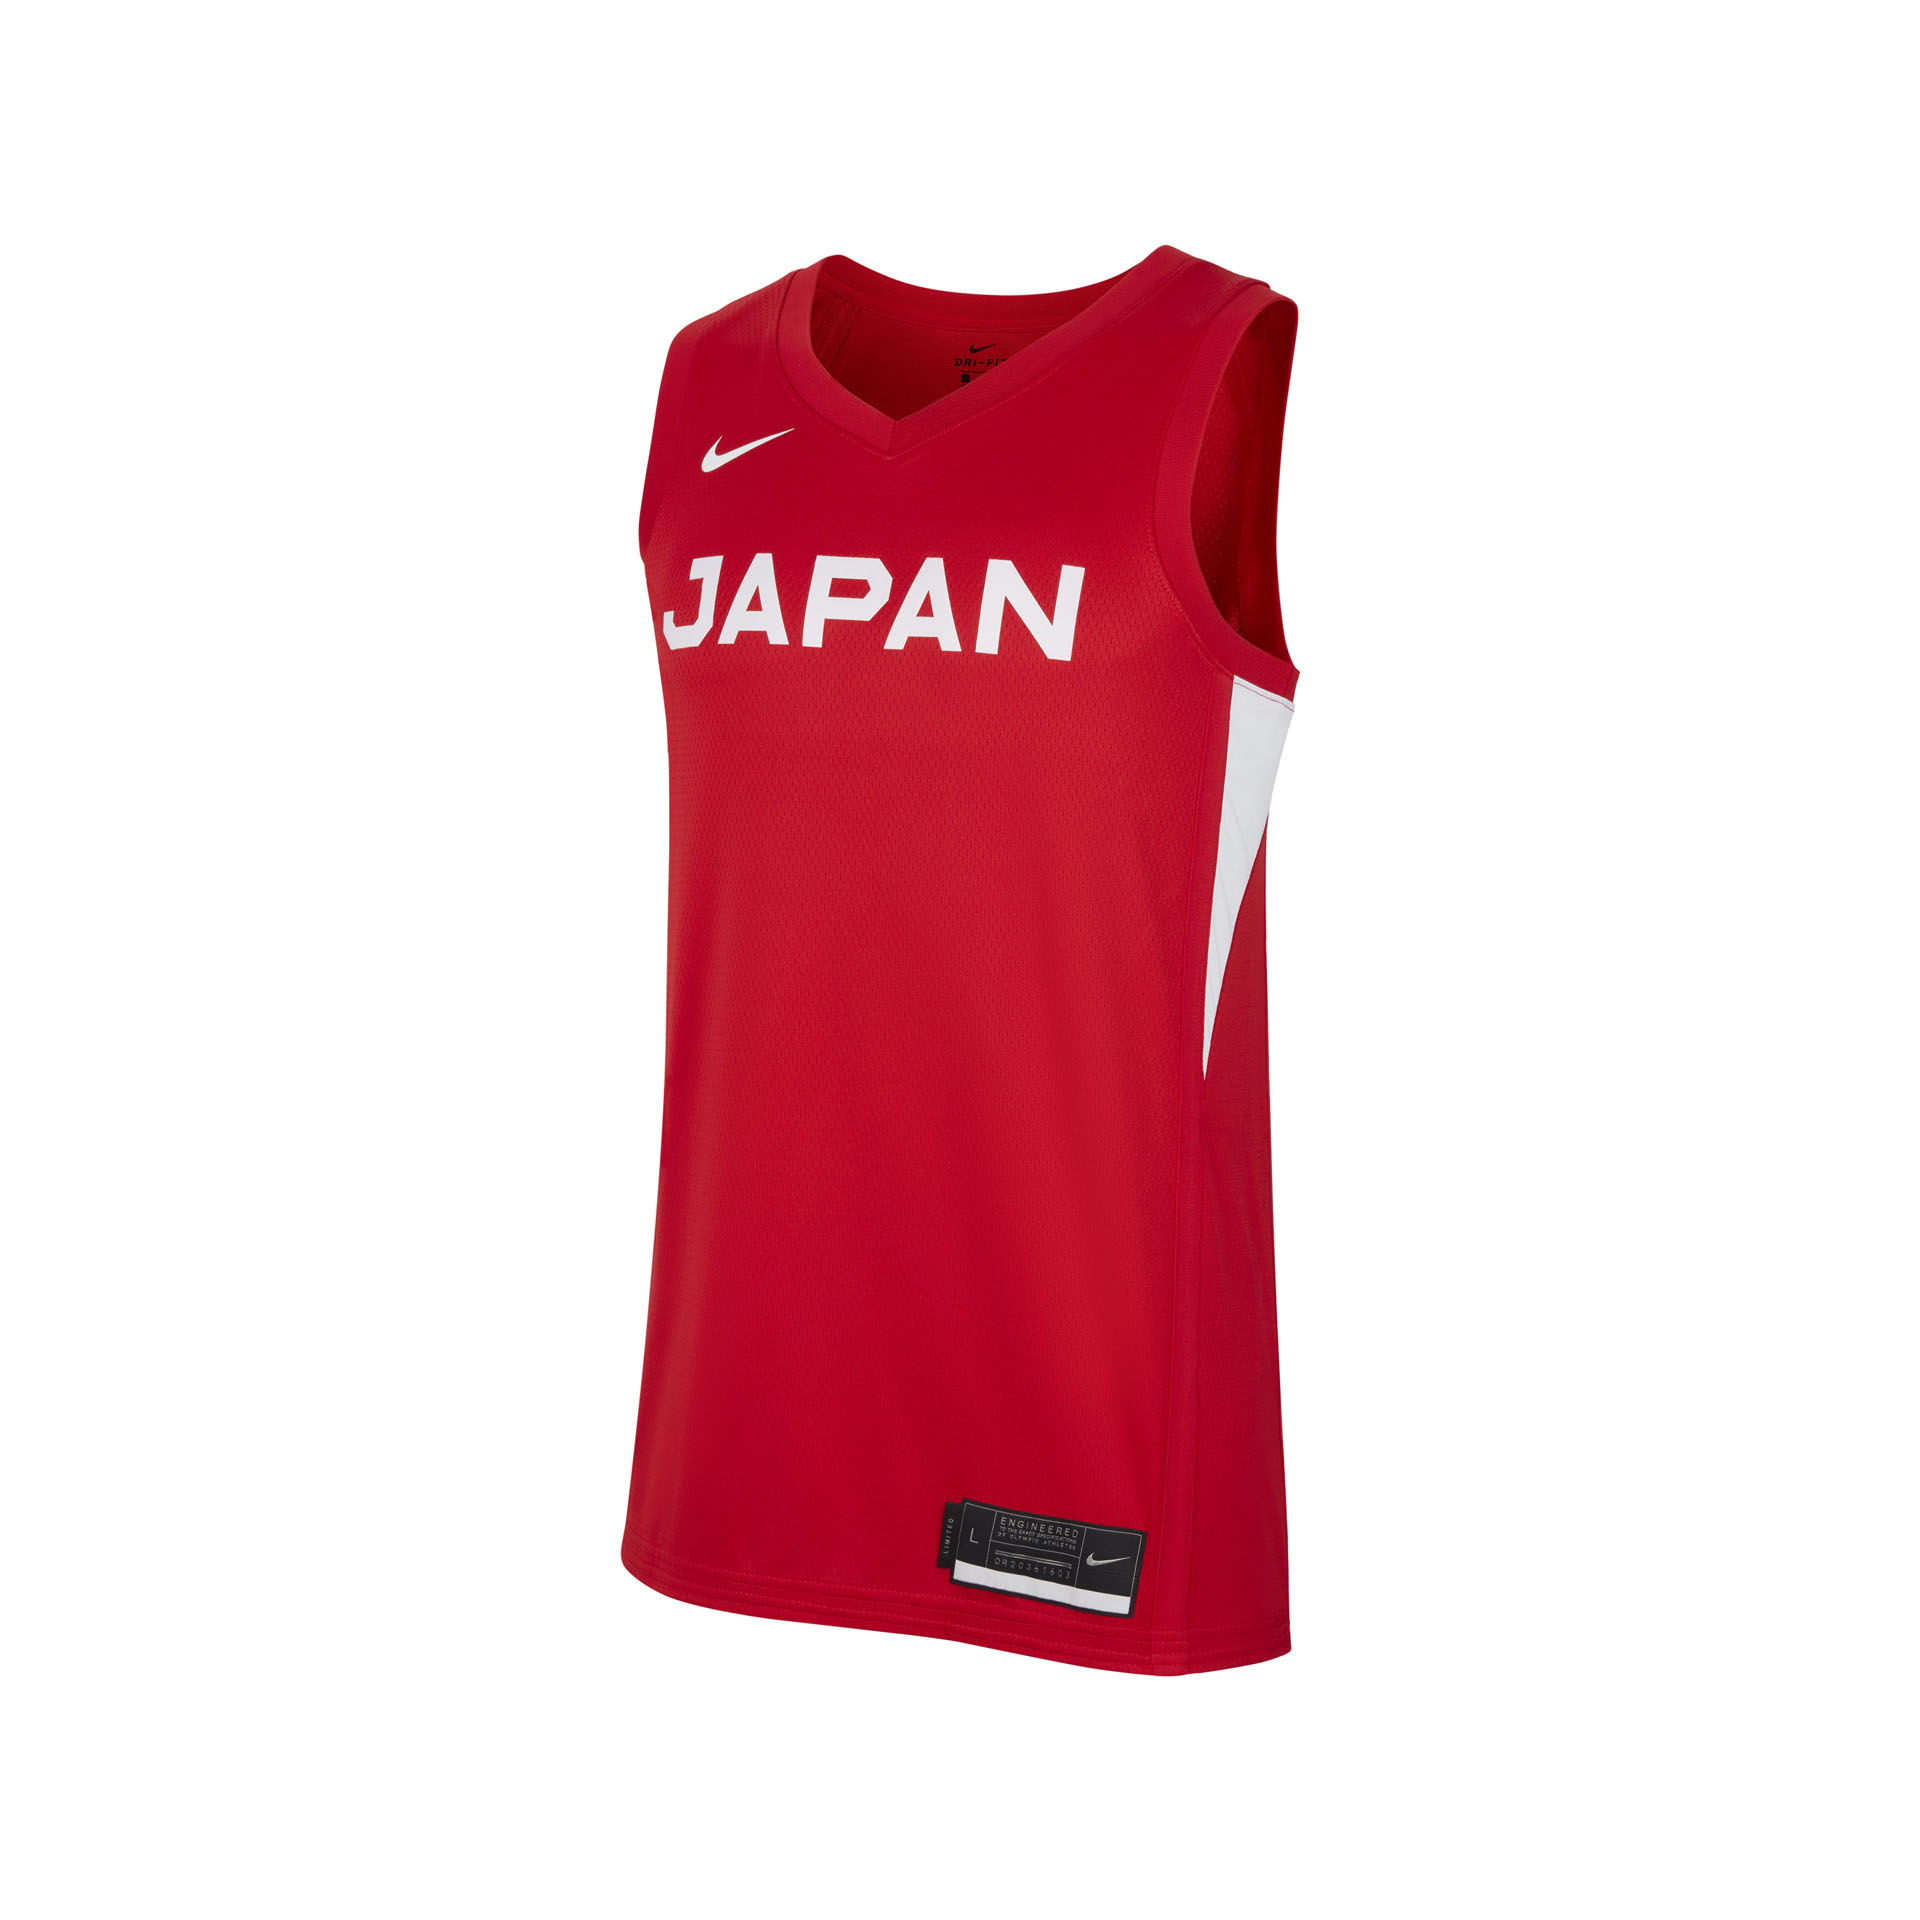 日本バスケットボール発展のためにナイキとJBAがパートナーシップを